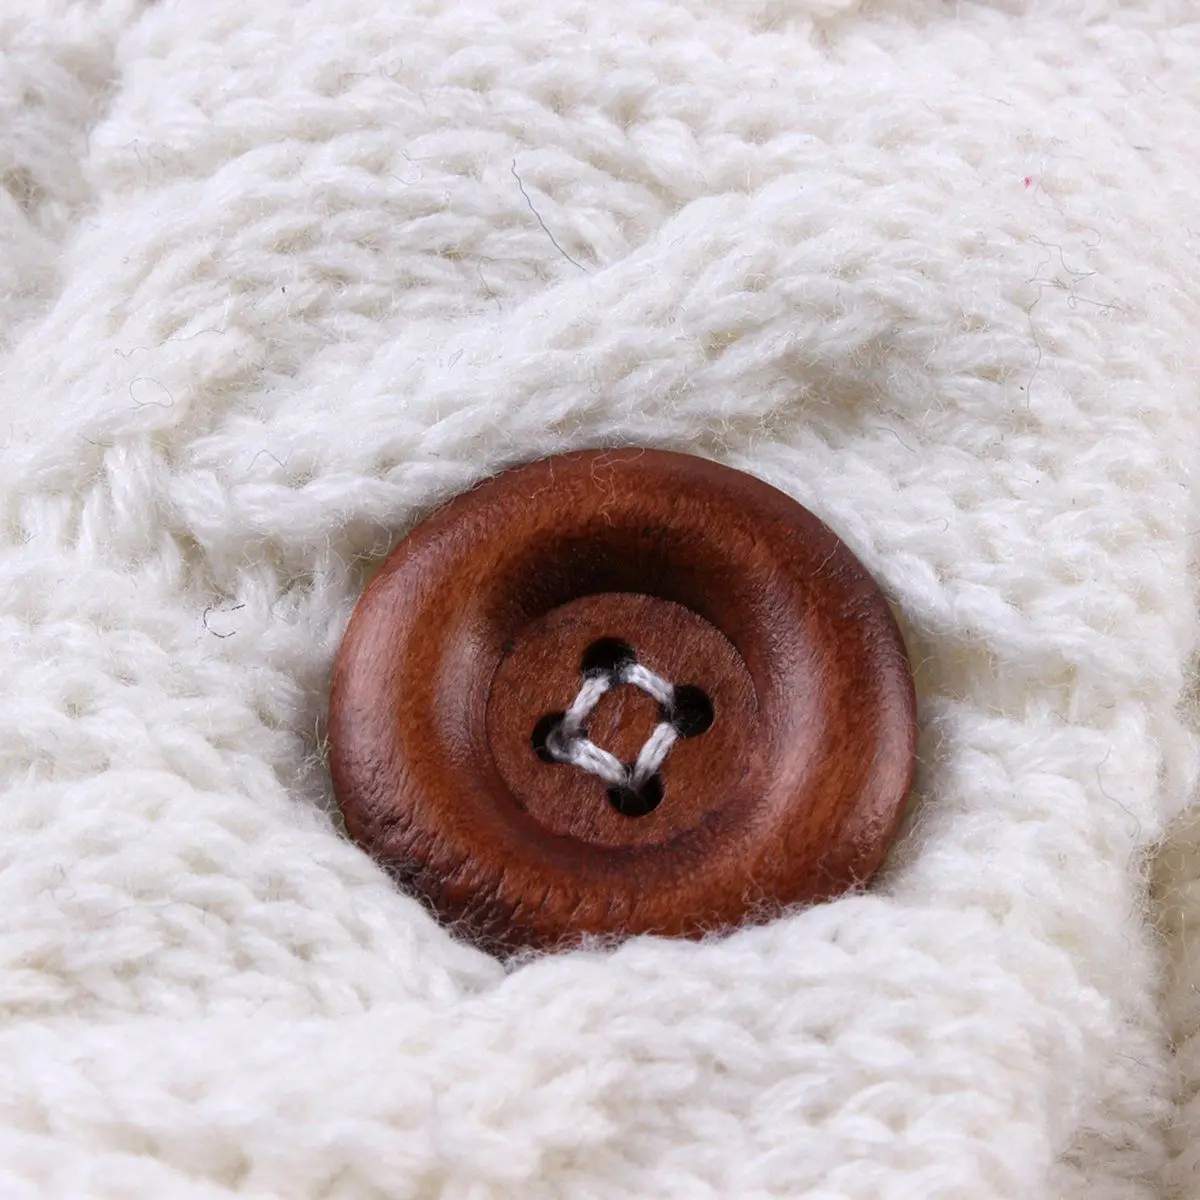 Детские зимние теплые спальные мешки кнопка для детской одежды вязанные пеленки обертывание пеленание коляска обертывание Малыша Одеяло для сна сумки